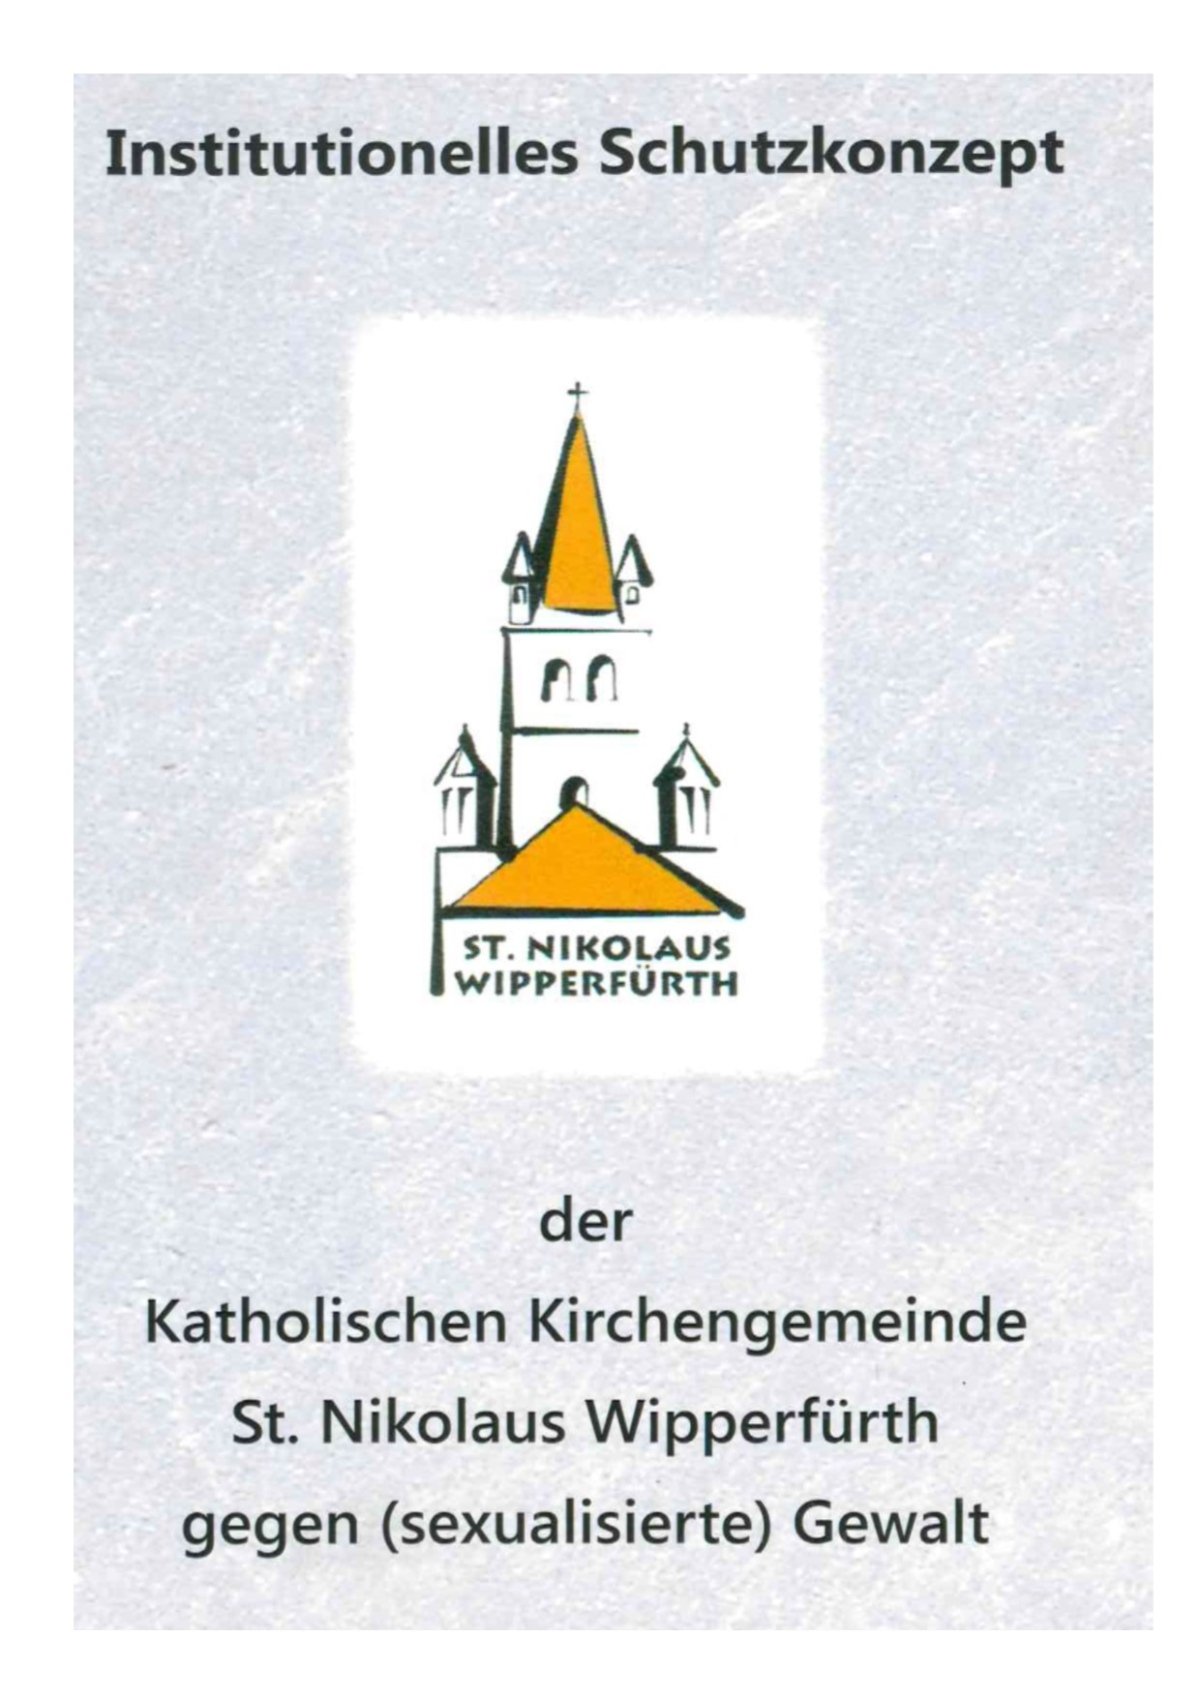 Institutionelles Schutzkonzept (c) Kirchengemeinde St. Nikolaus